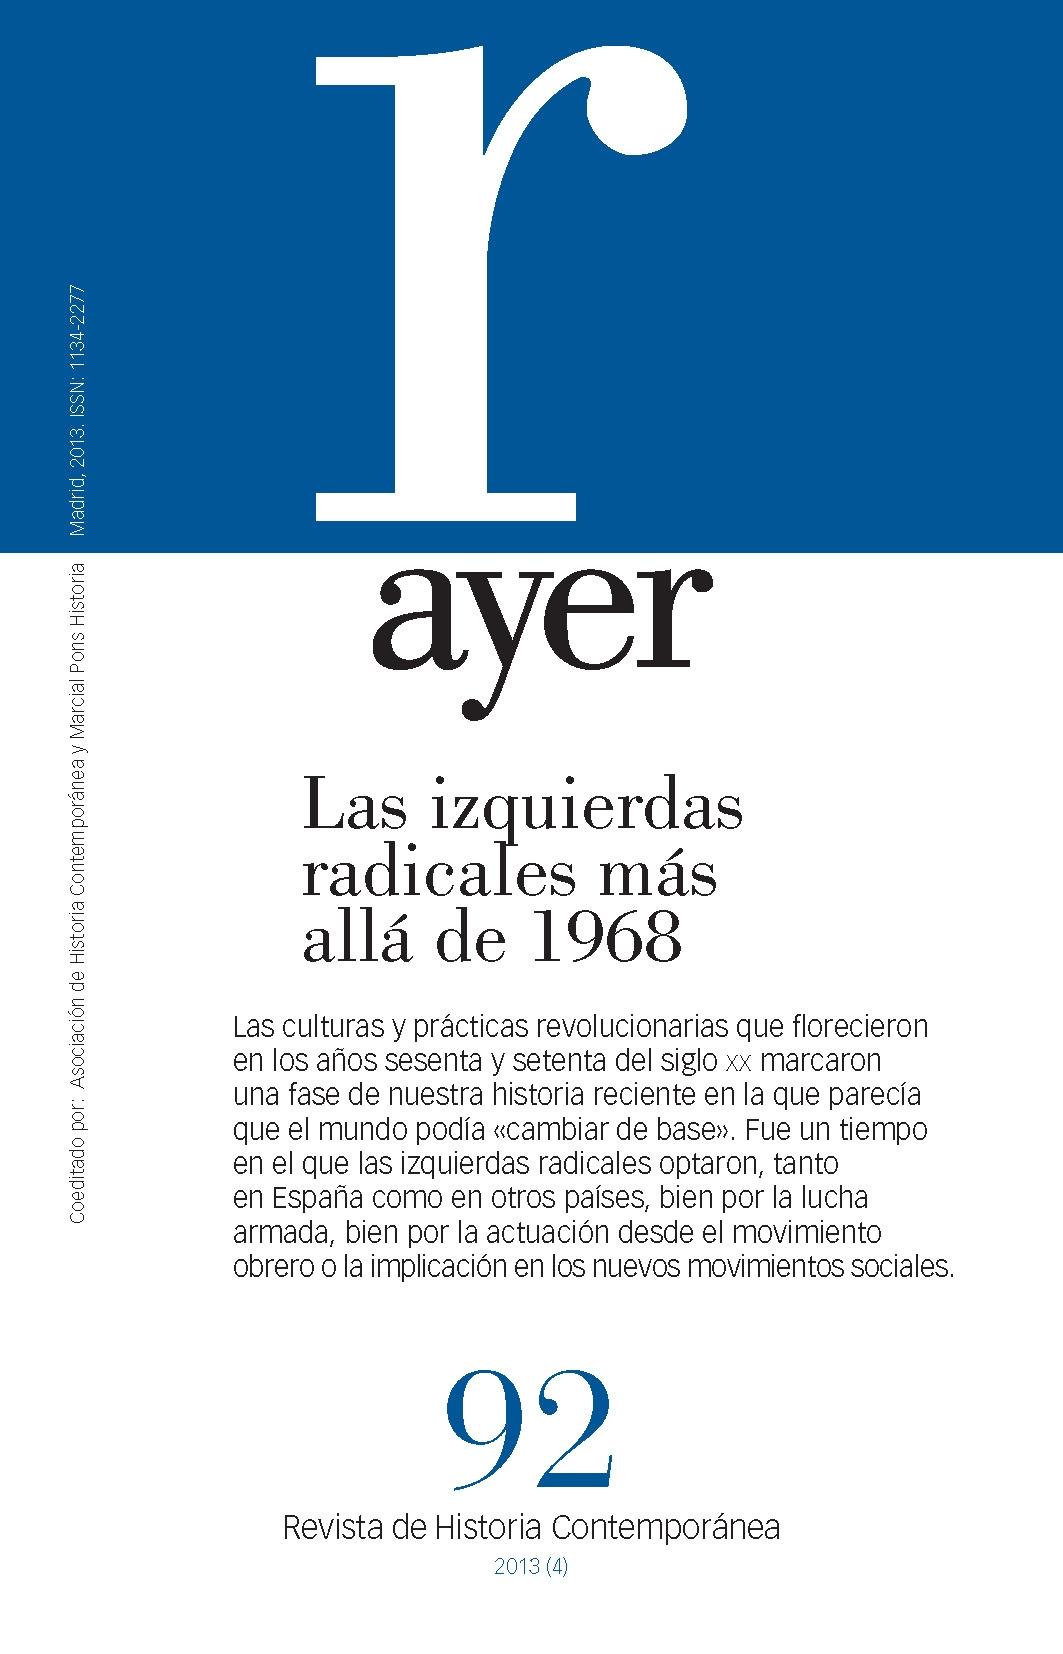 Revista Ayer Nº92 "Las Izquierdas Radicales Más Allá de 1968". 